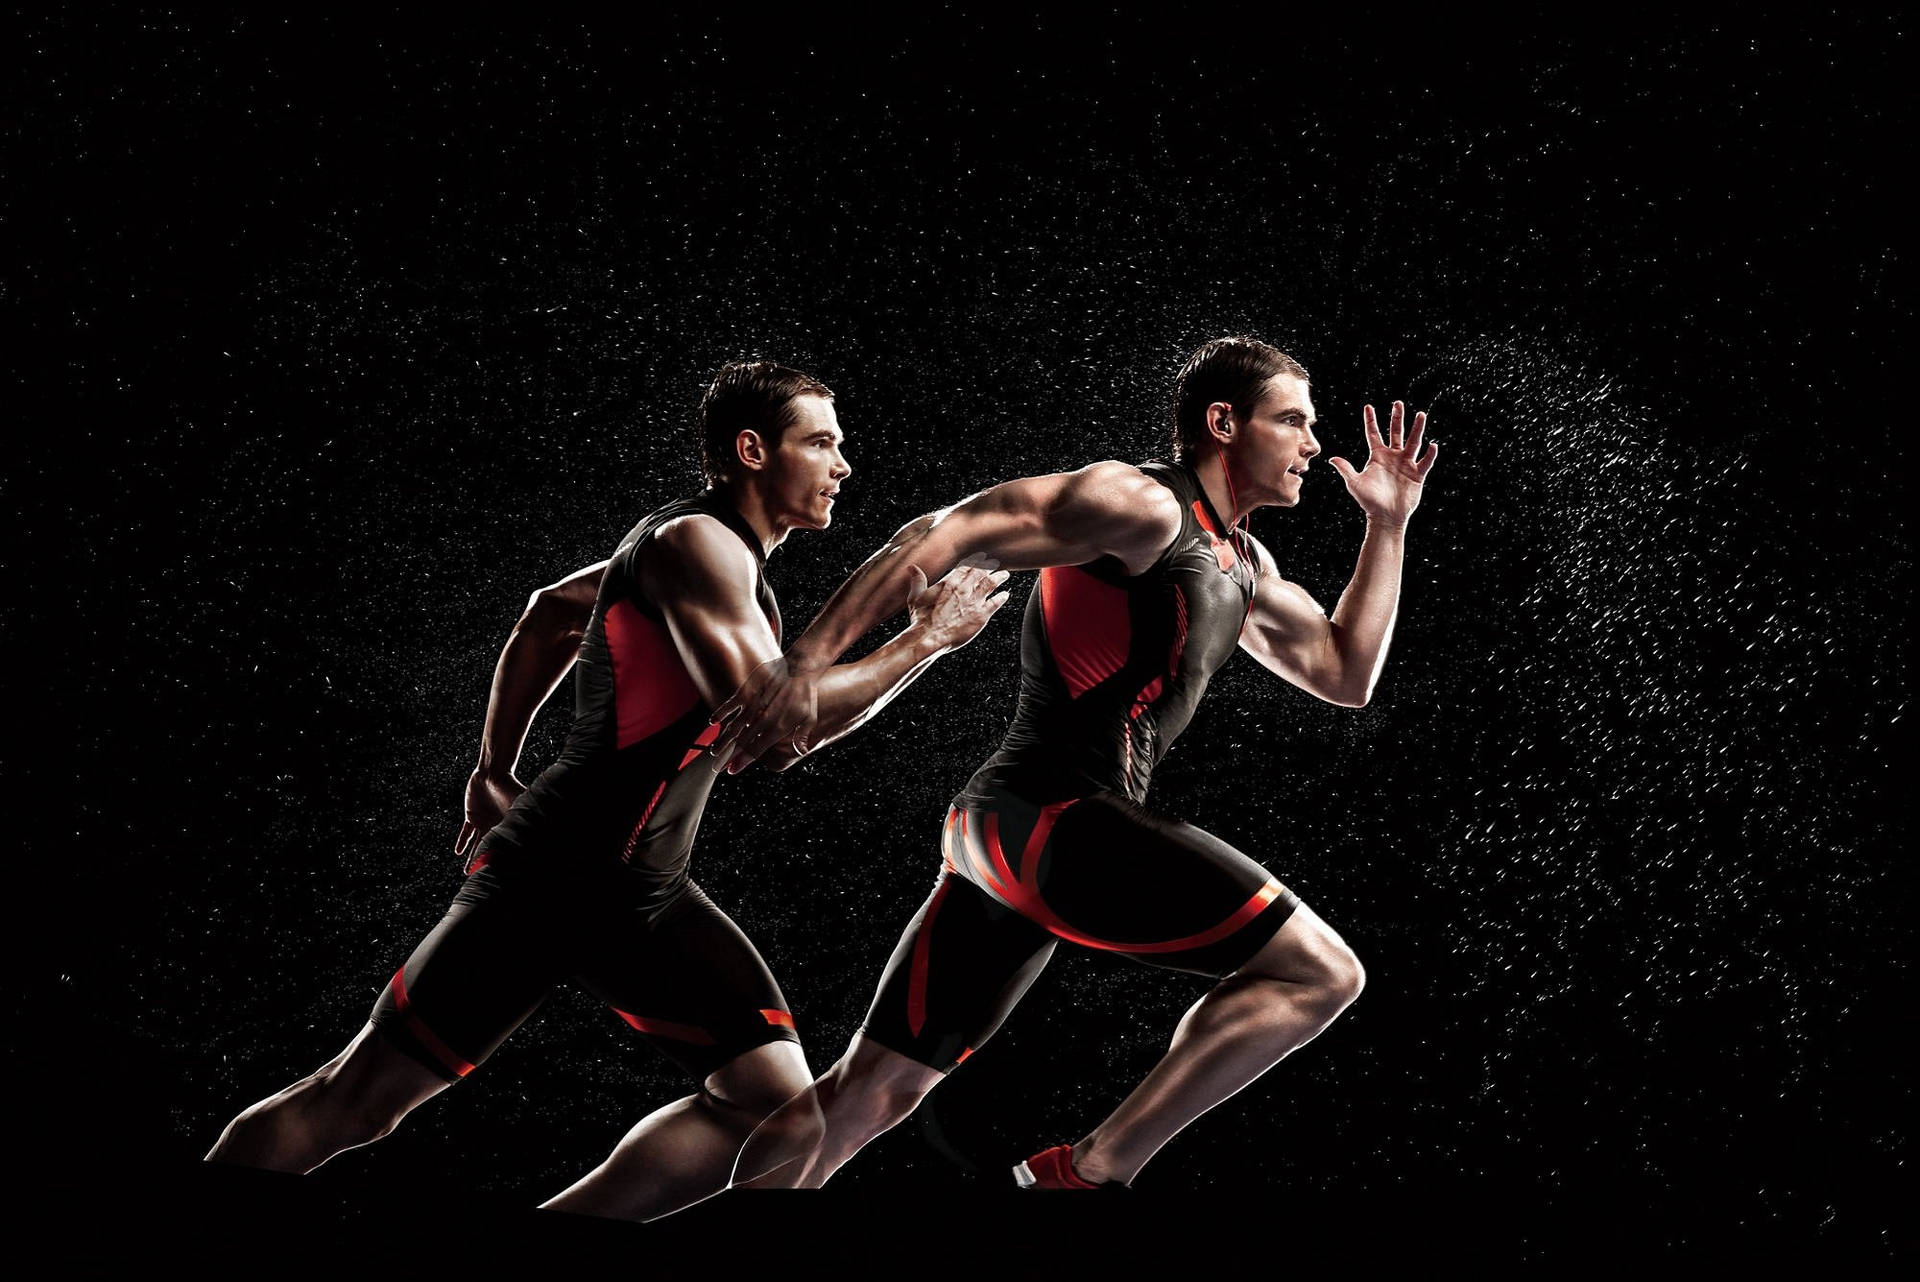 Running Sports In 4k Wallpaper